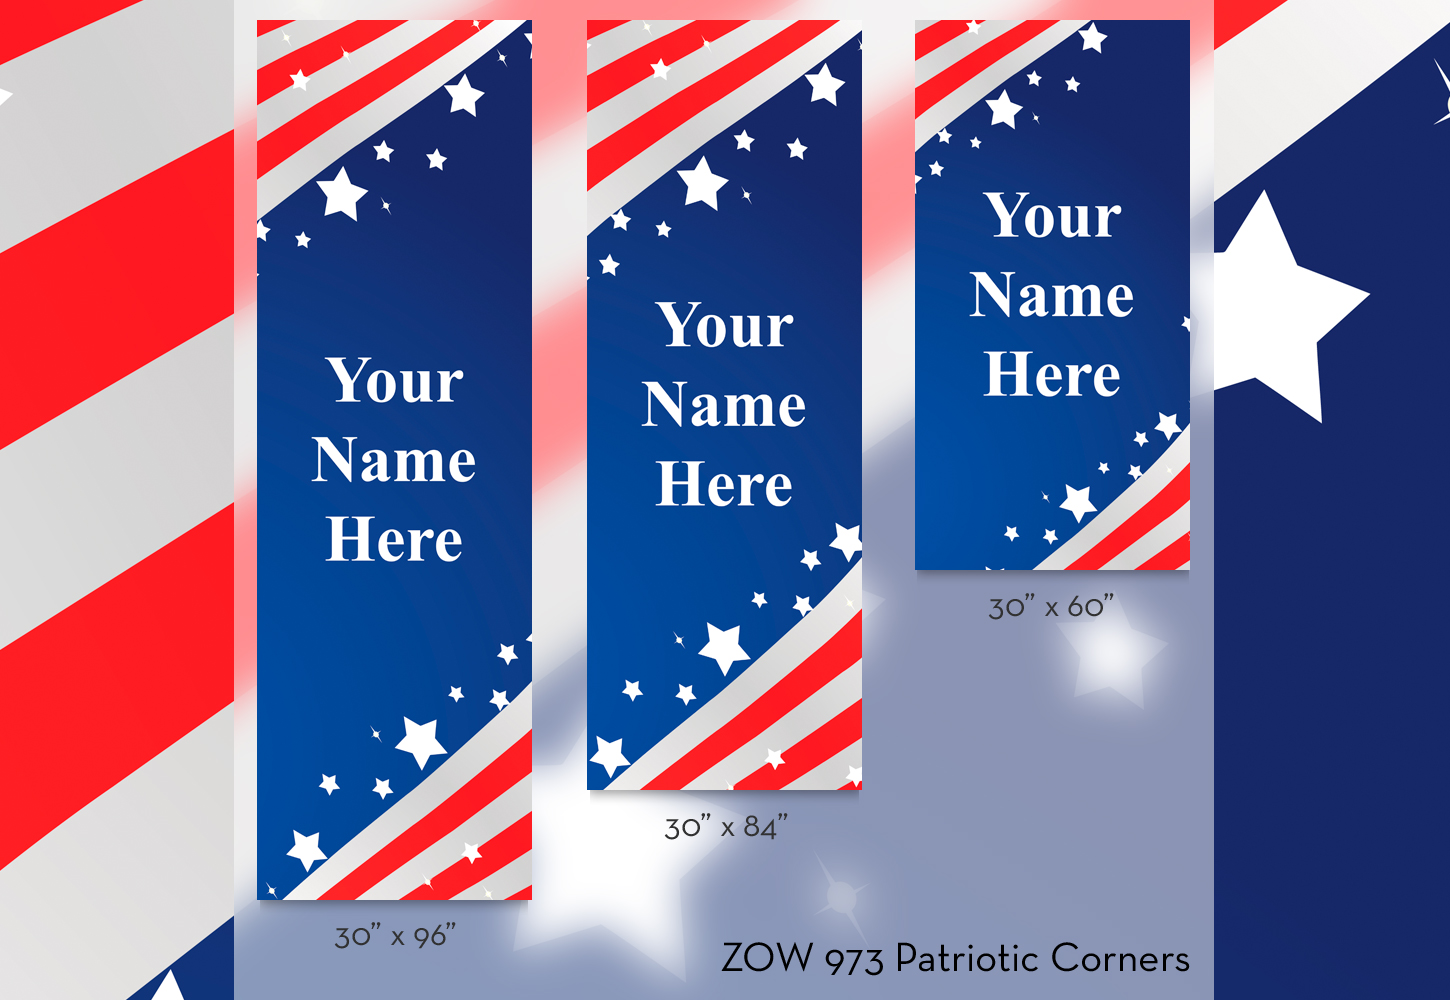 ZOW 973 Patriotic Corners